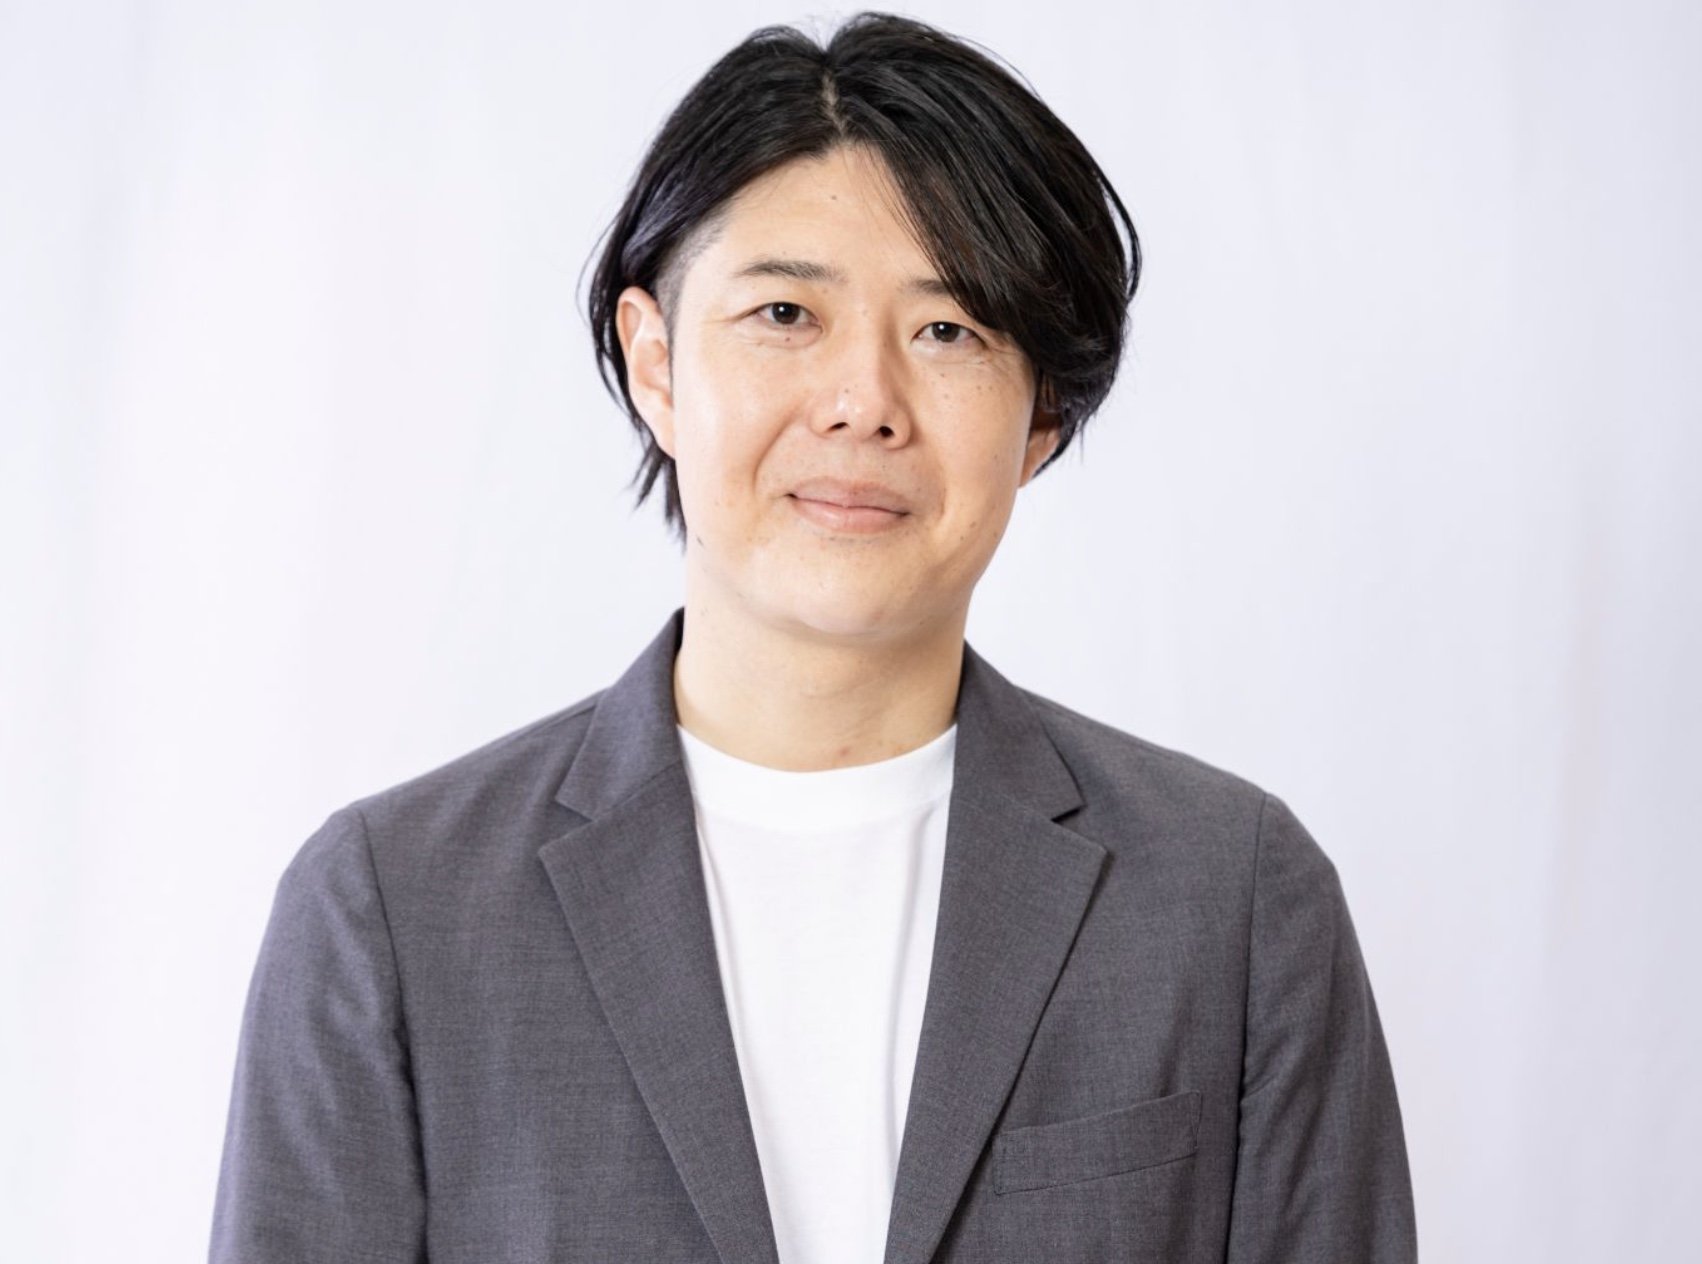 日本クラウドキャピタル代表取締役CEOの柴原祐喜氏